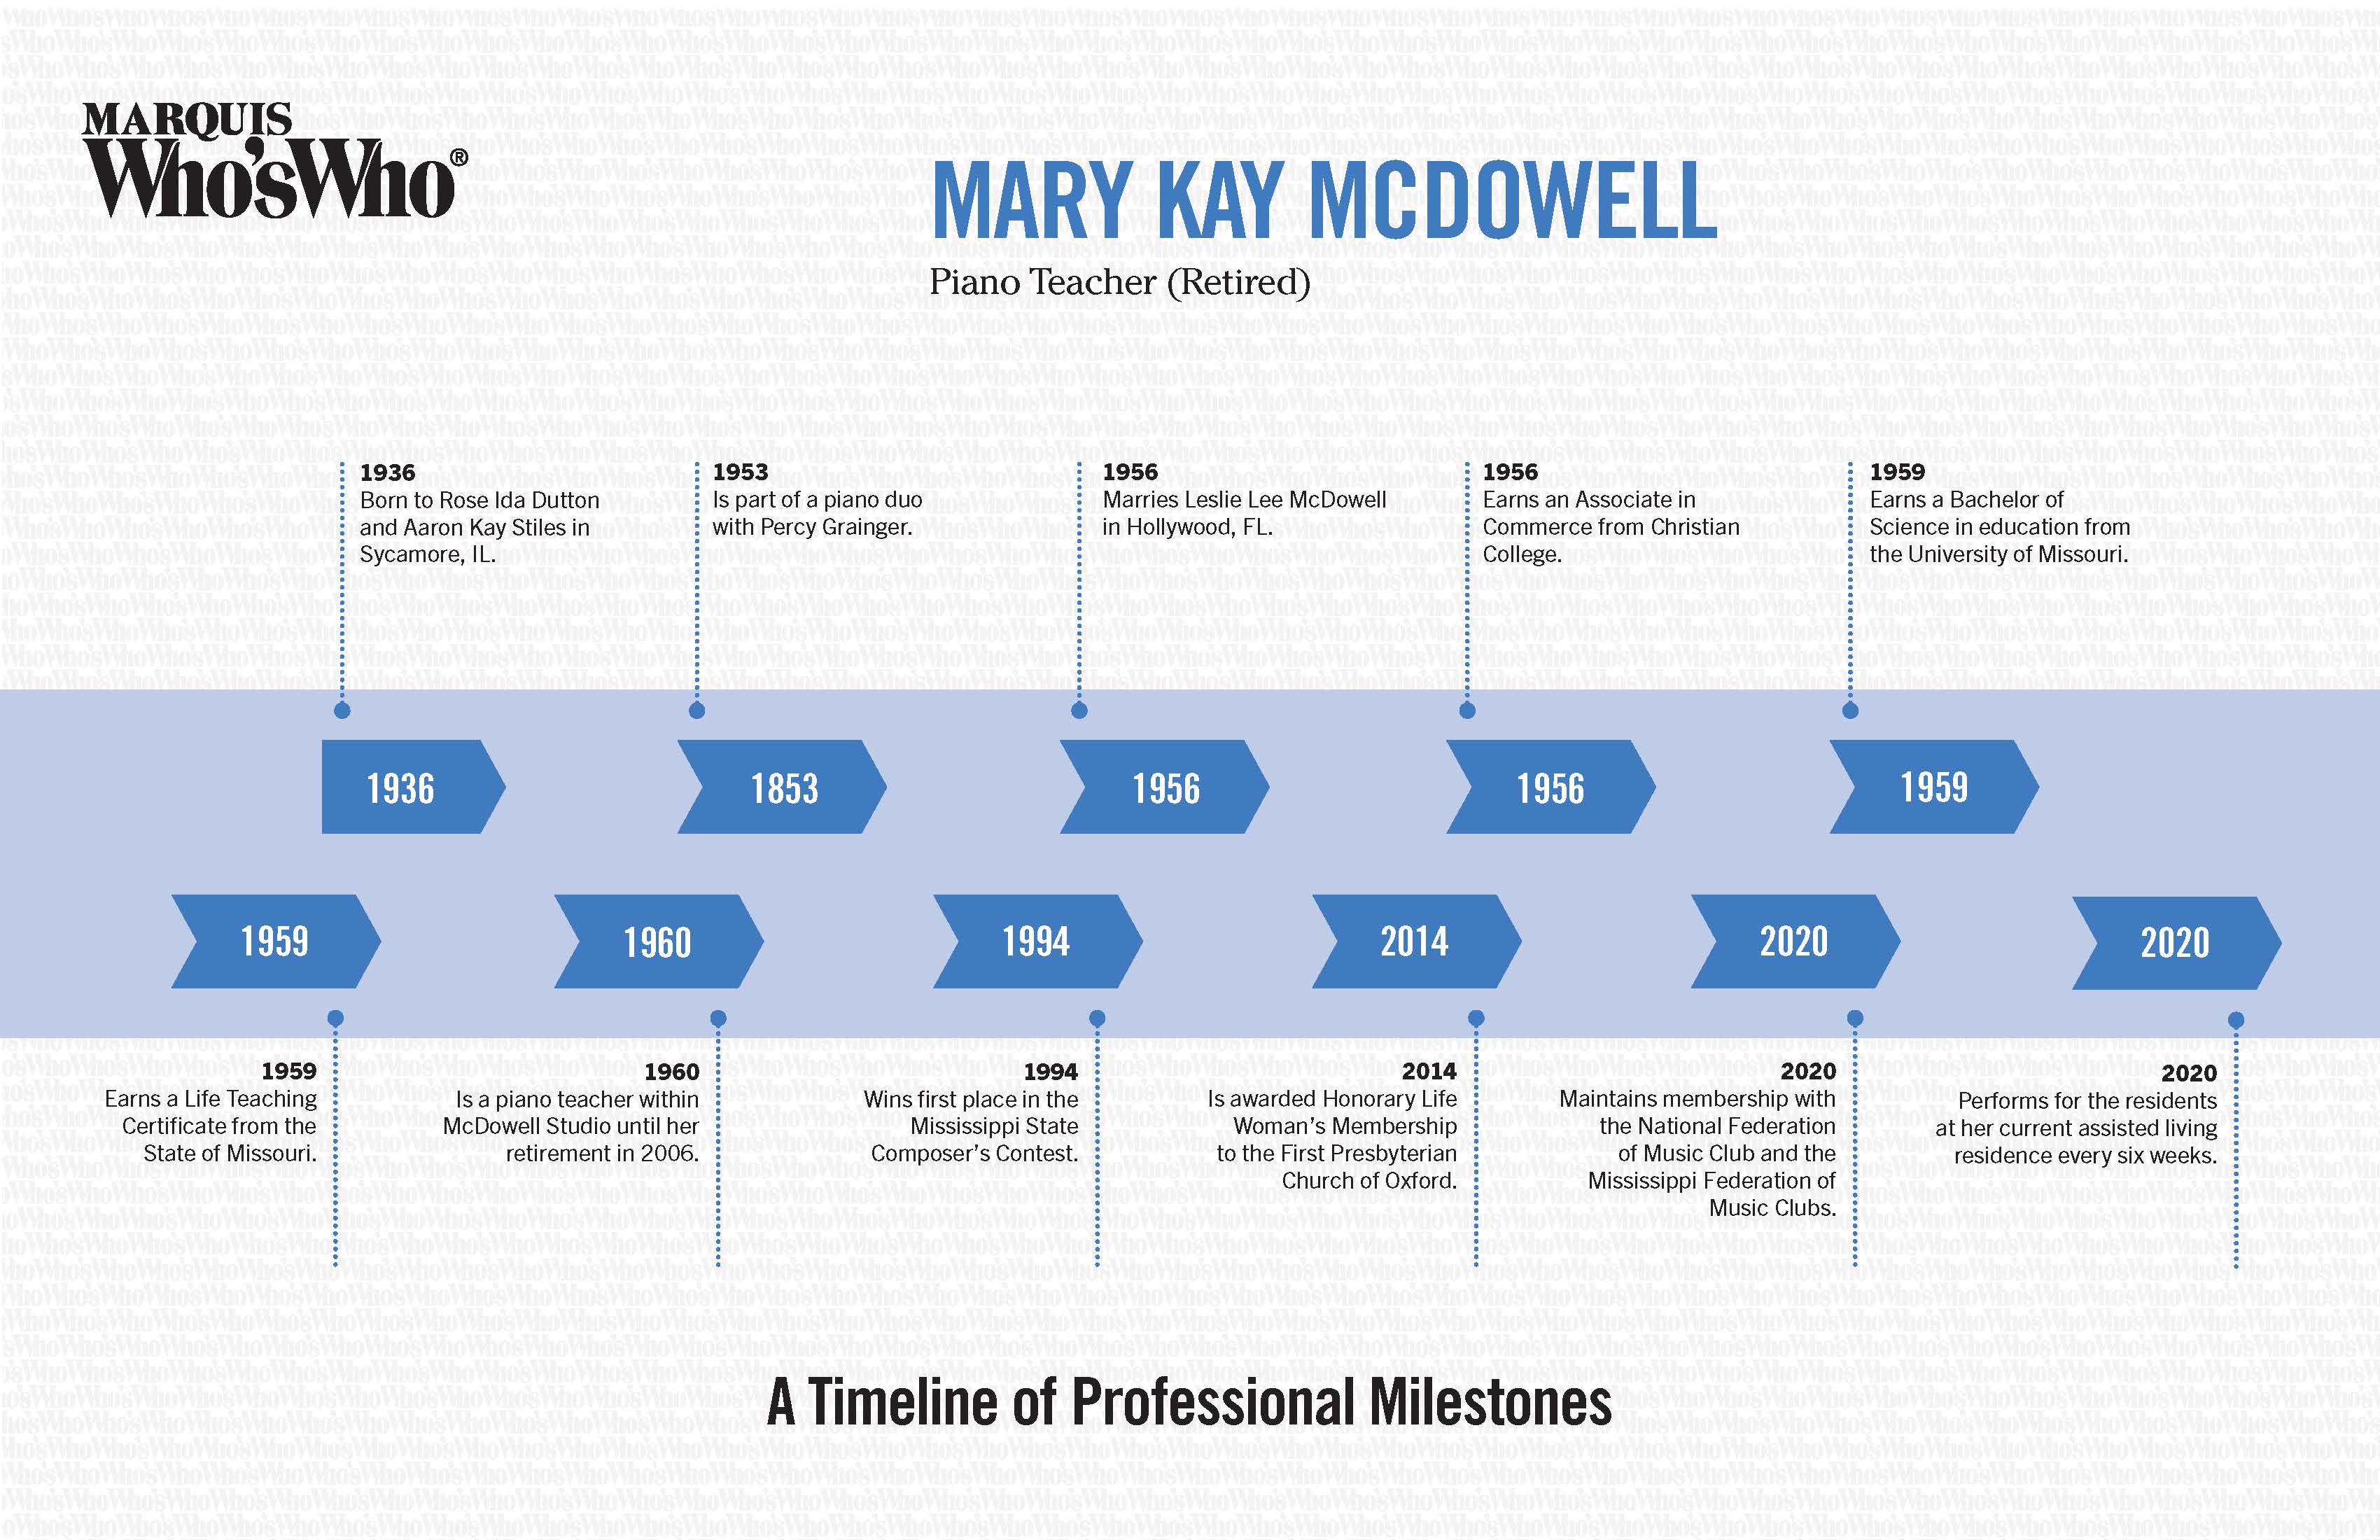 Mary Kay McDowell